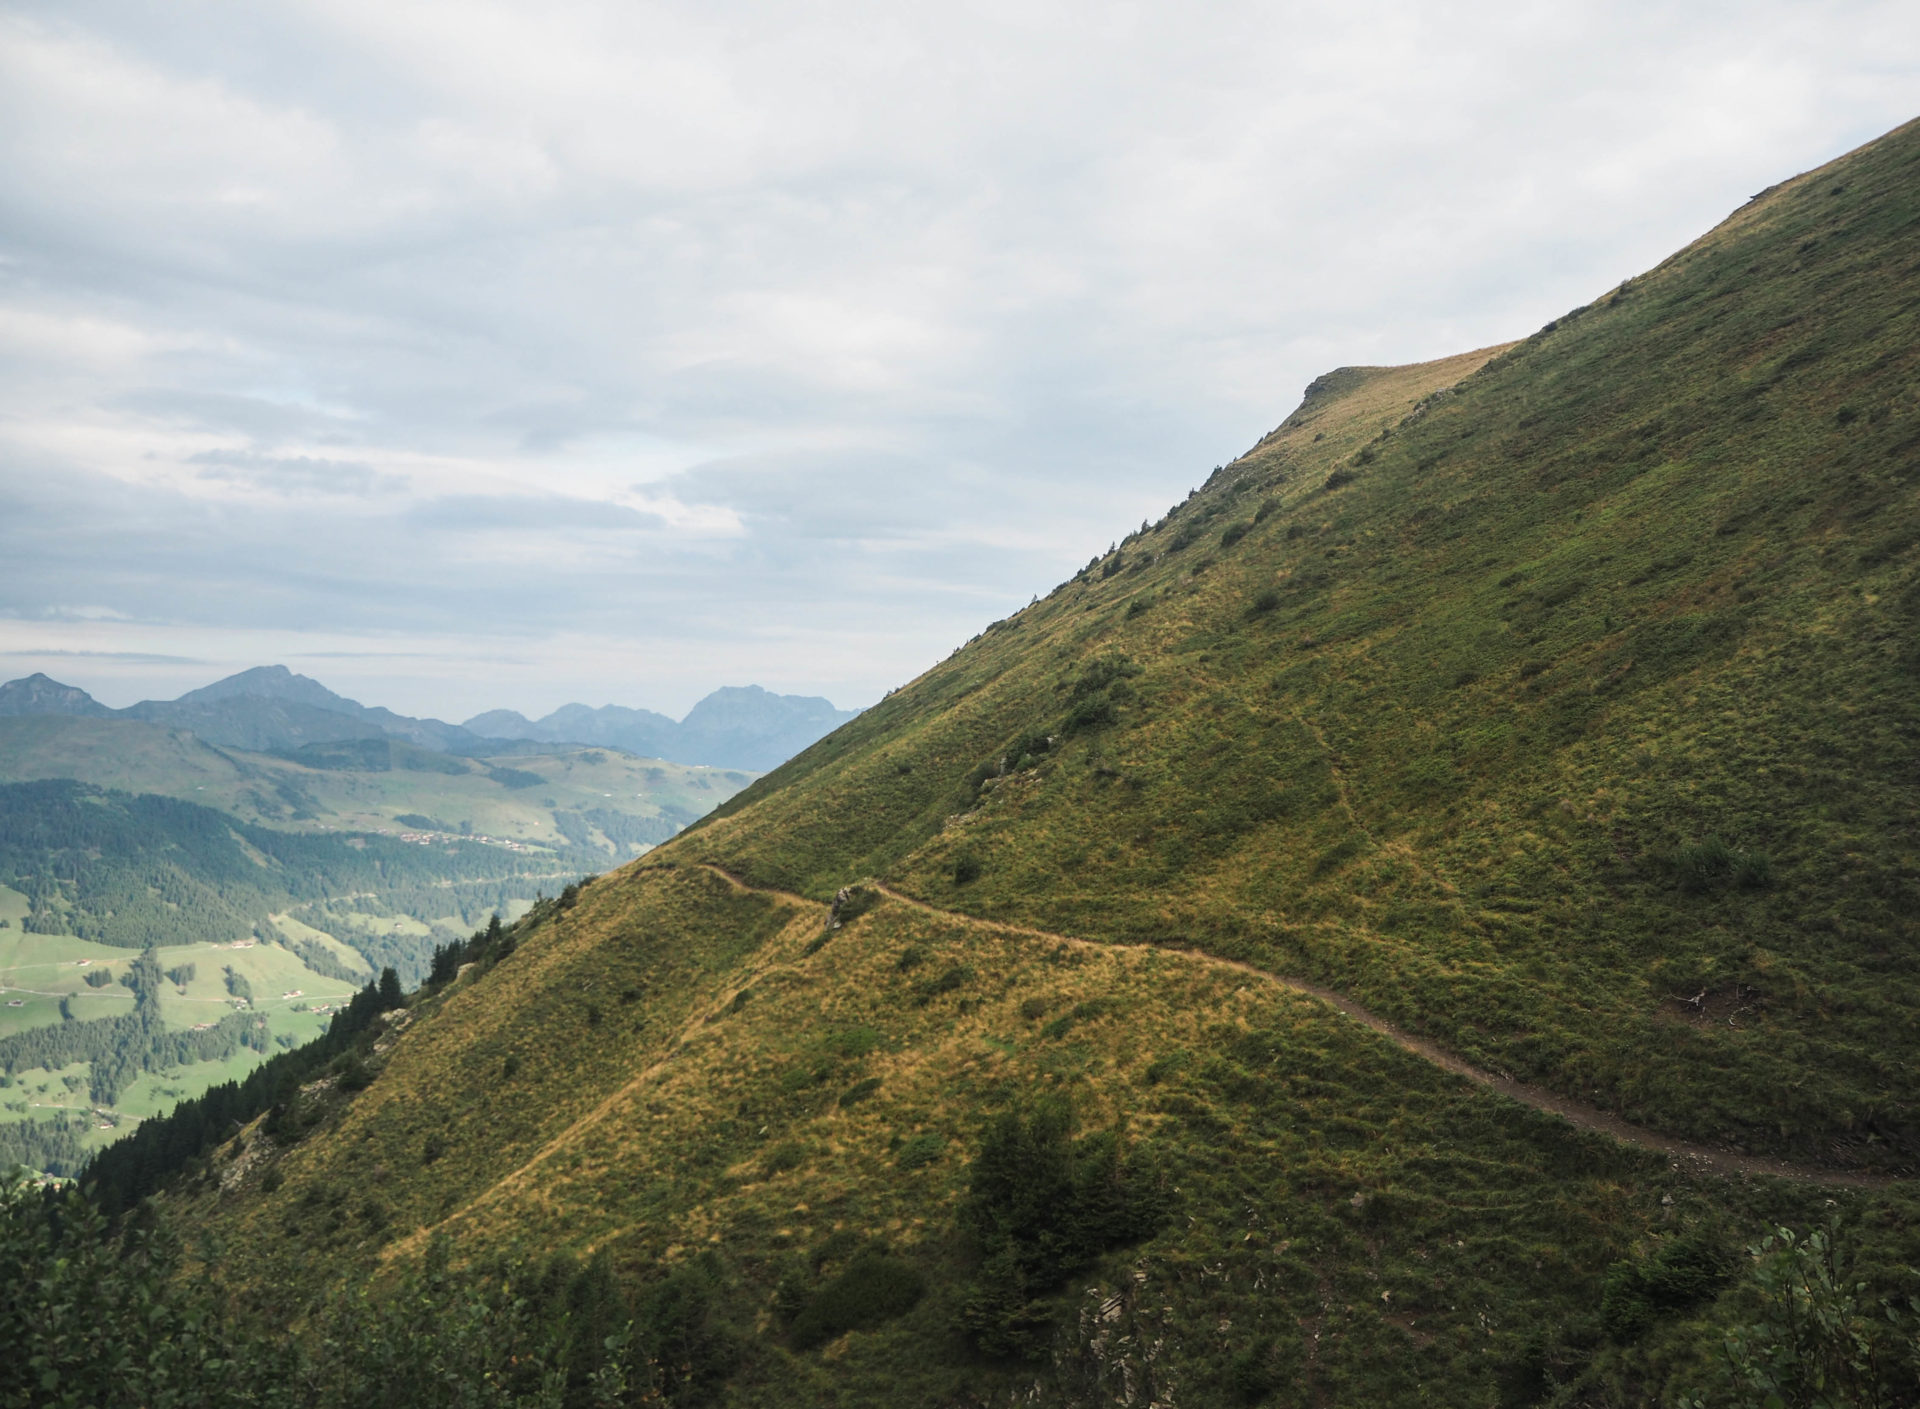 Jour 2 du Tour des Dents du Midi - Faire le Tour des Dents du Midi en 6 jours en solo et en mode slow - Une randonnée itinérante, un trek à découvrir en Suisse dans le Valais